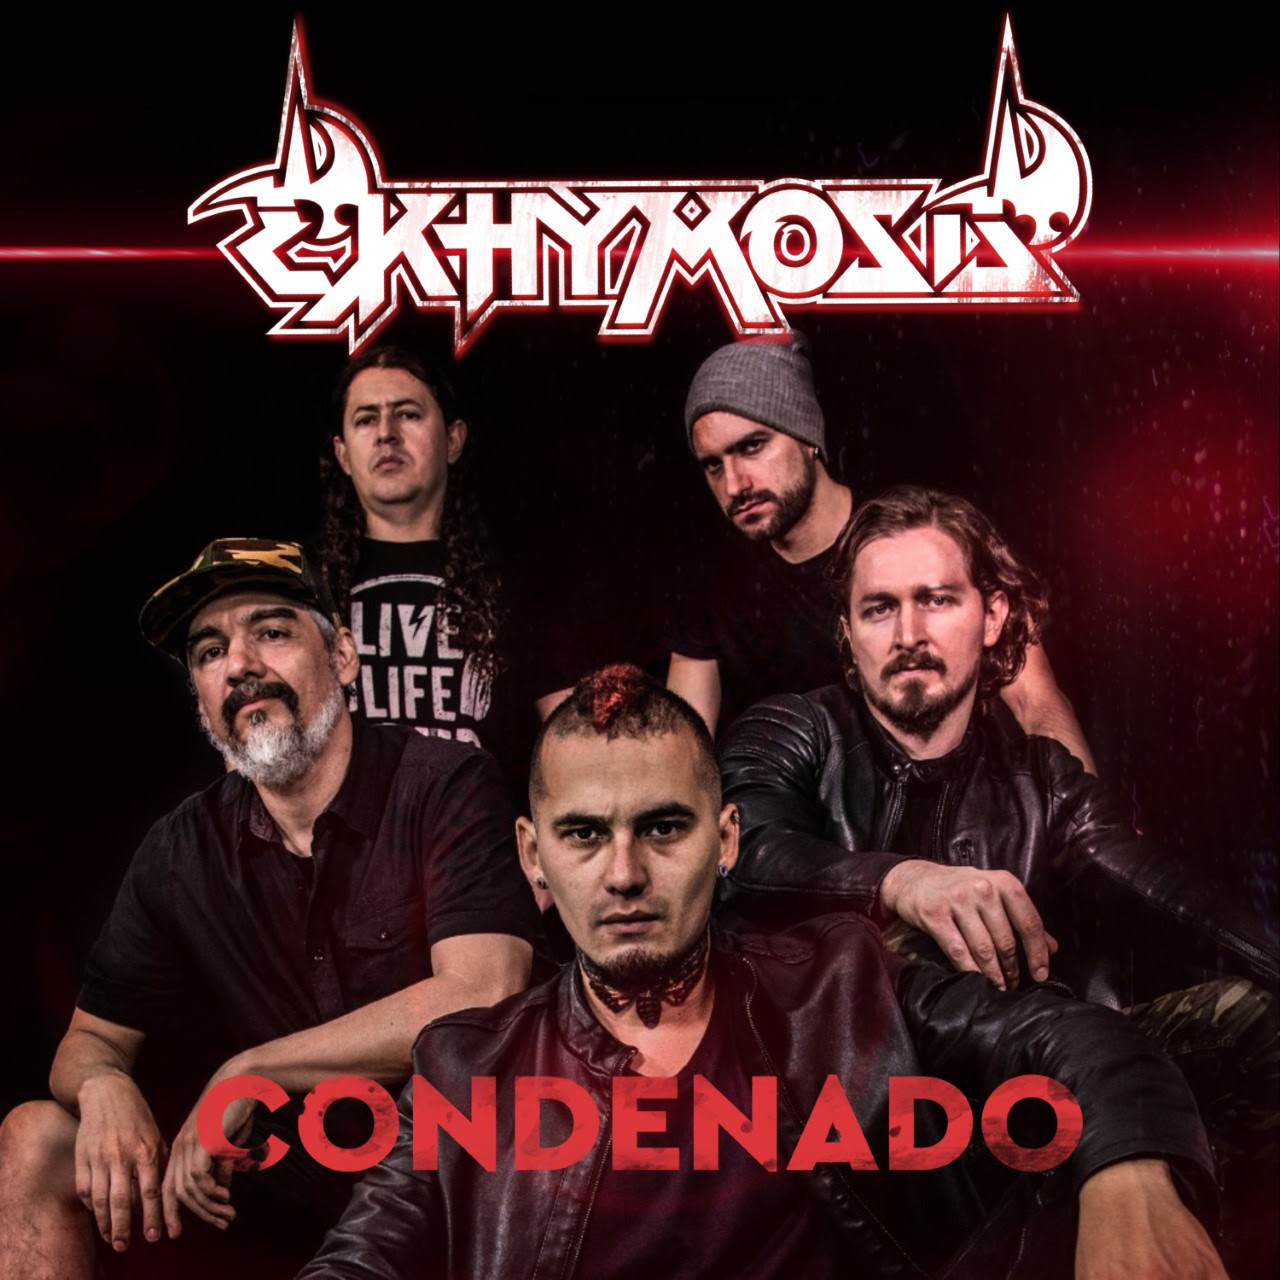 La banda colombiana Ekhymosis